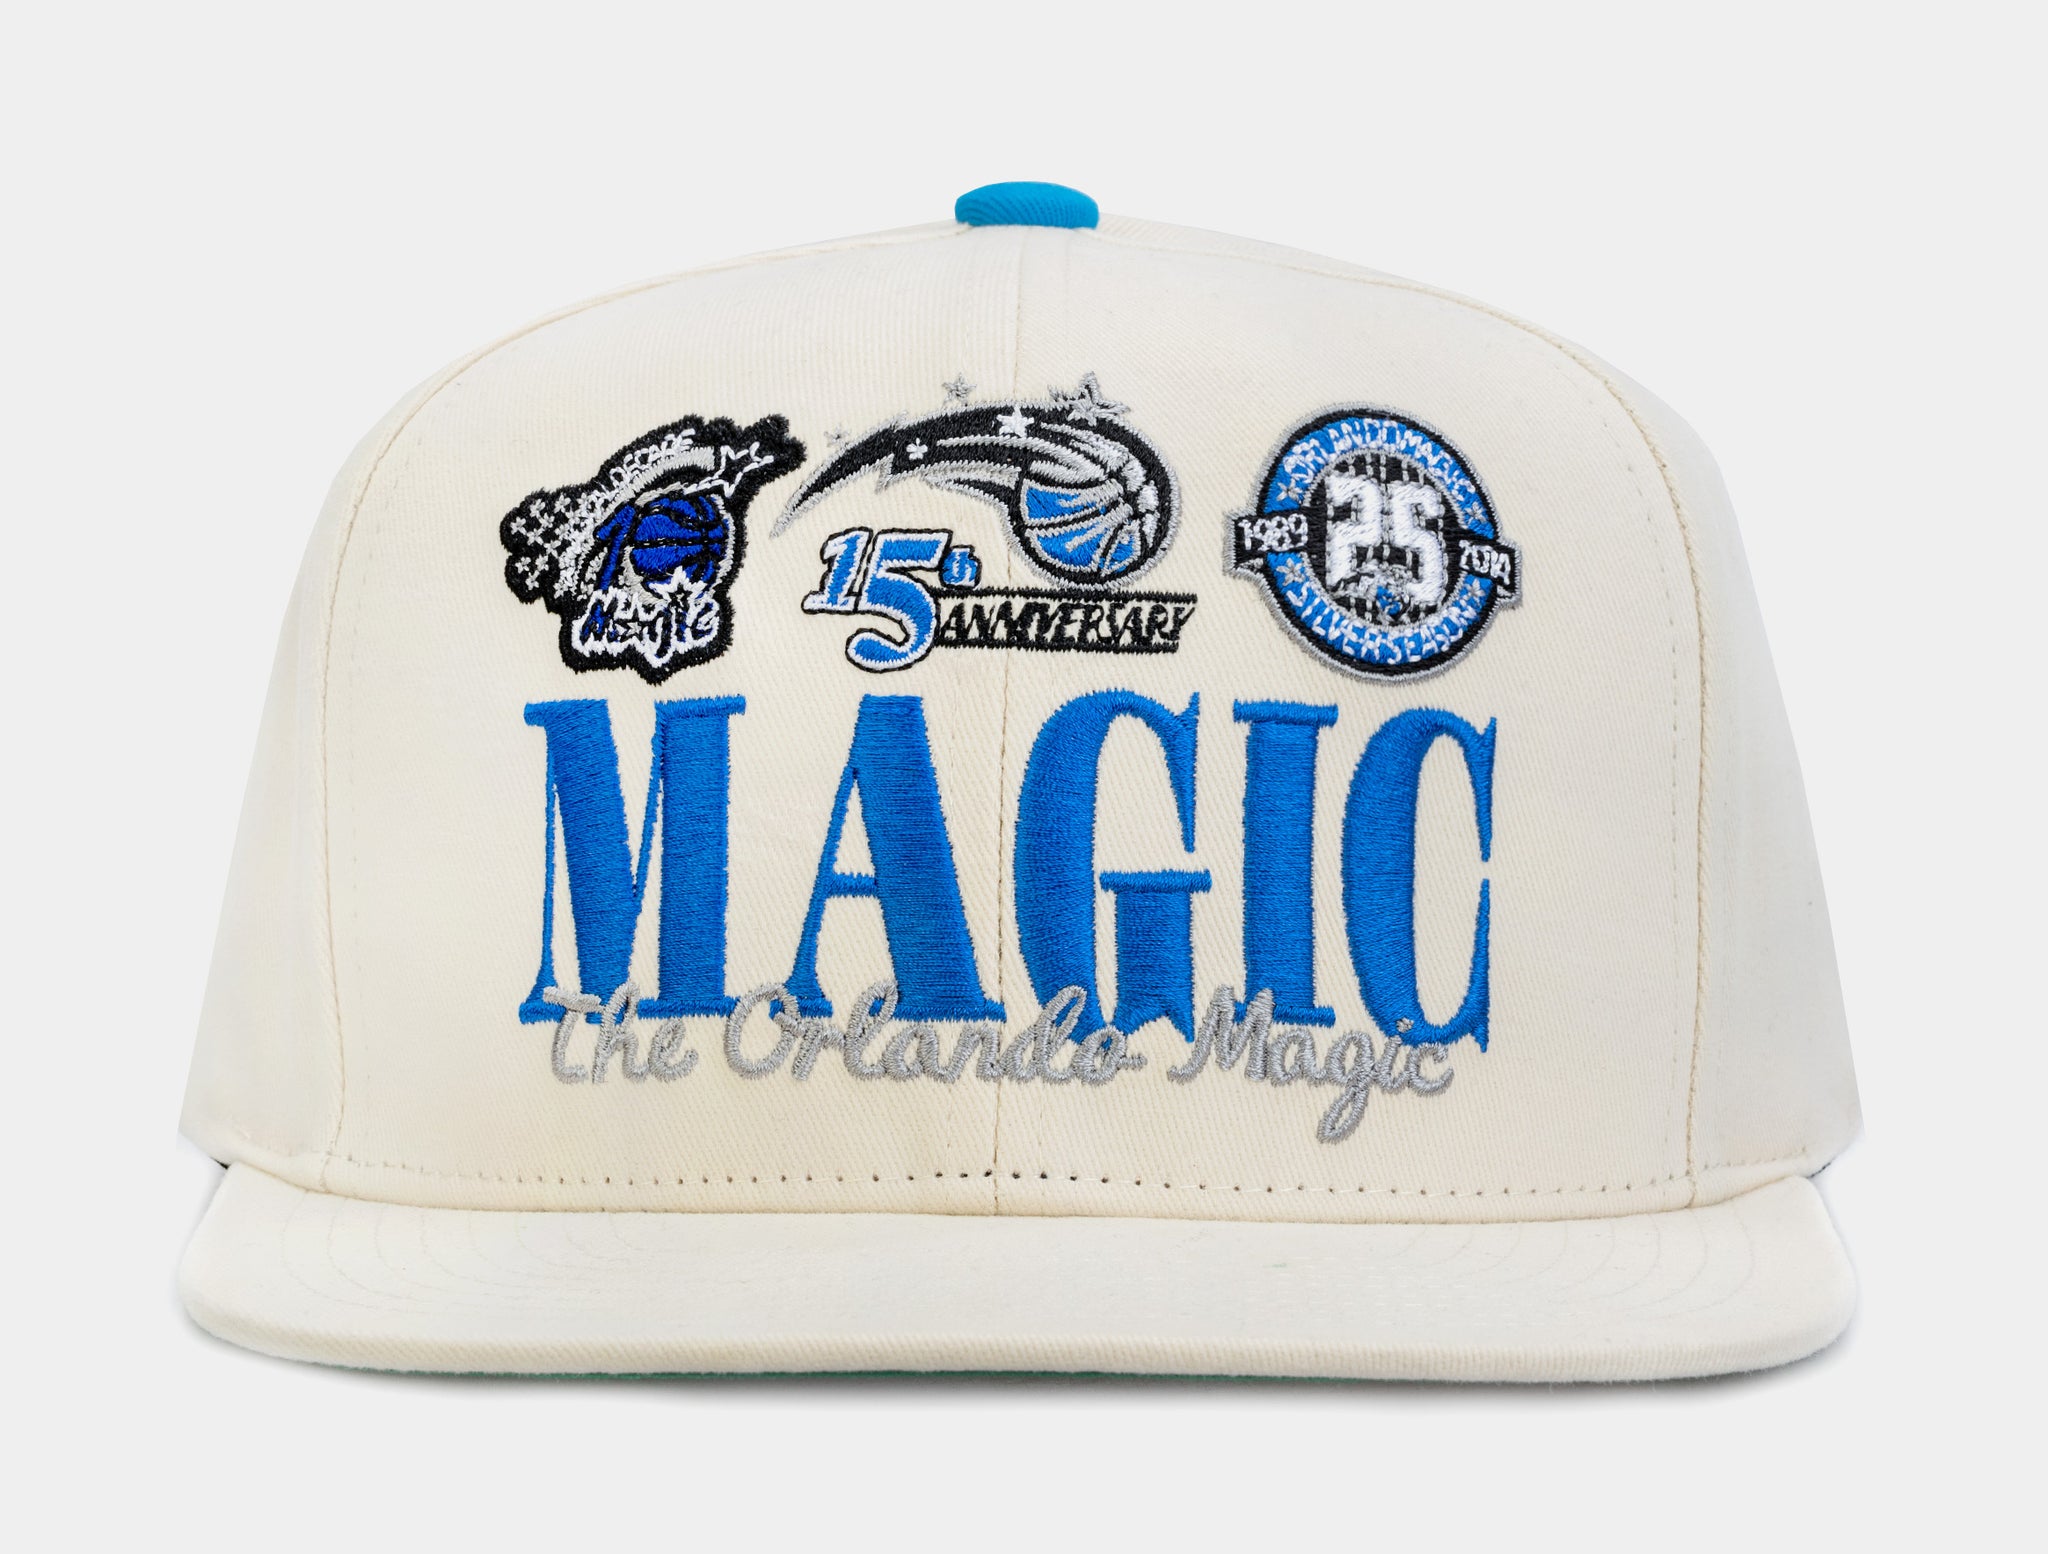 ORLANDO MAGIC cap hat vintage